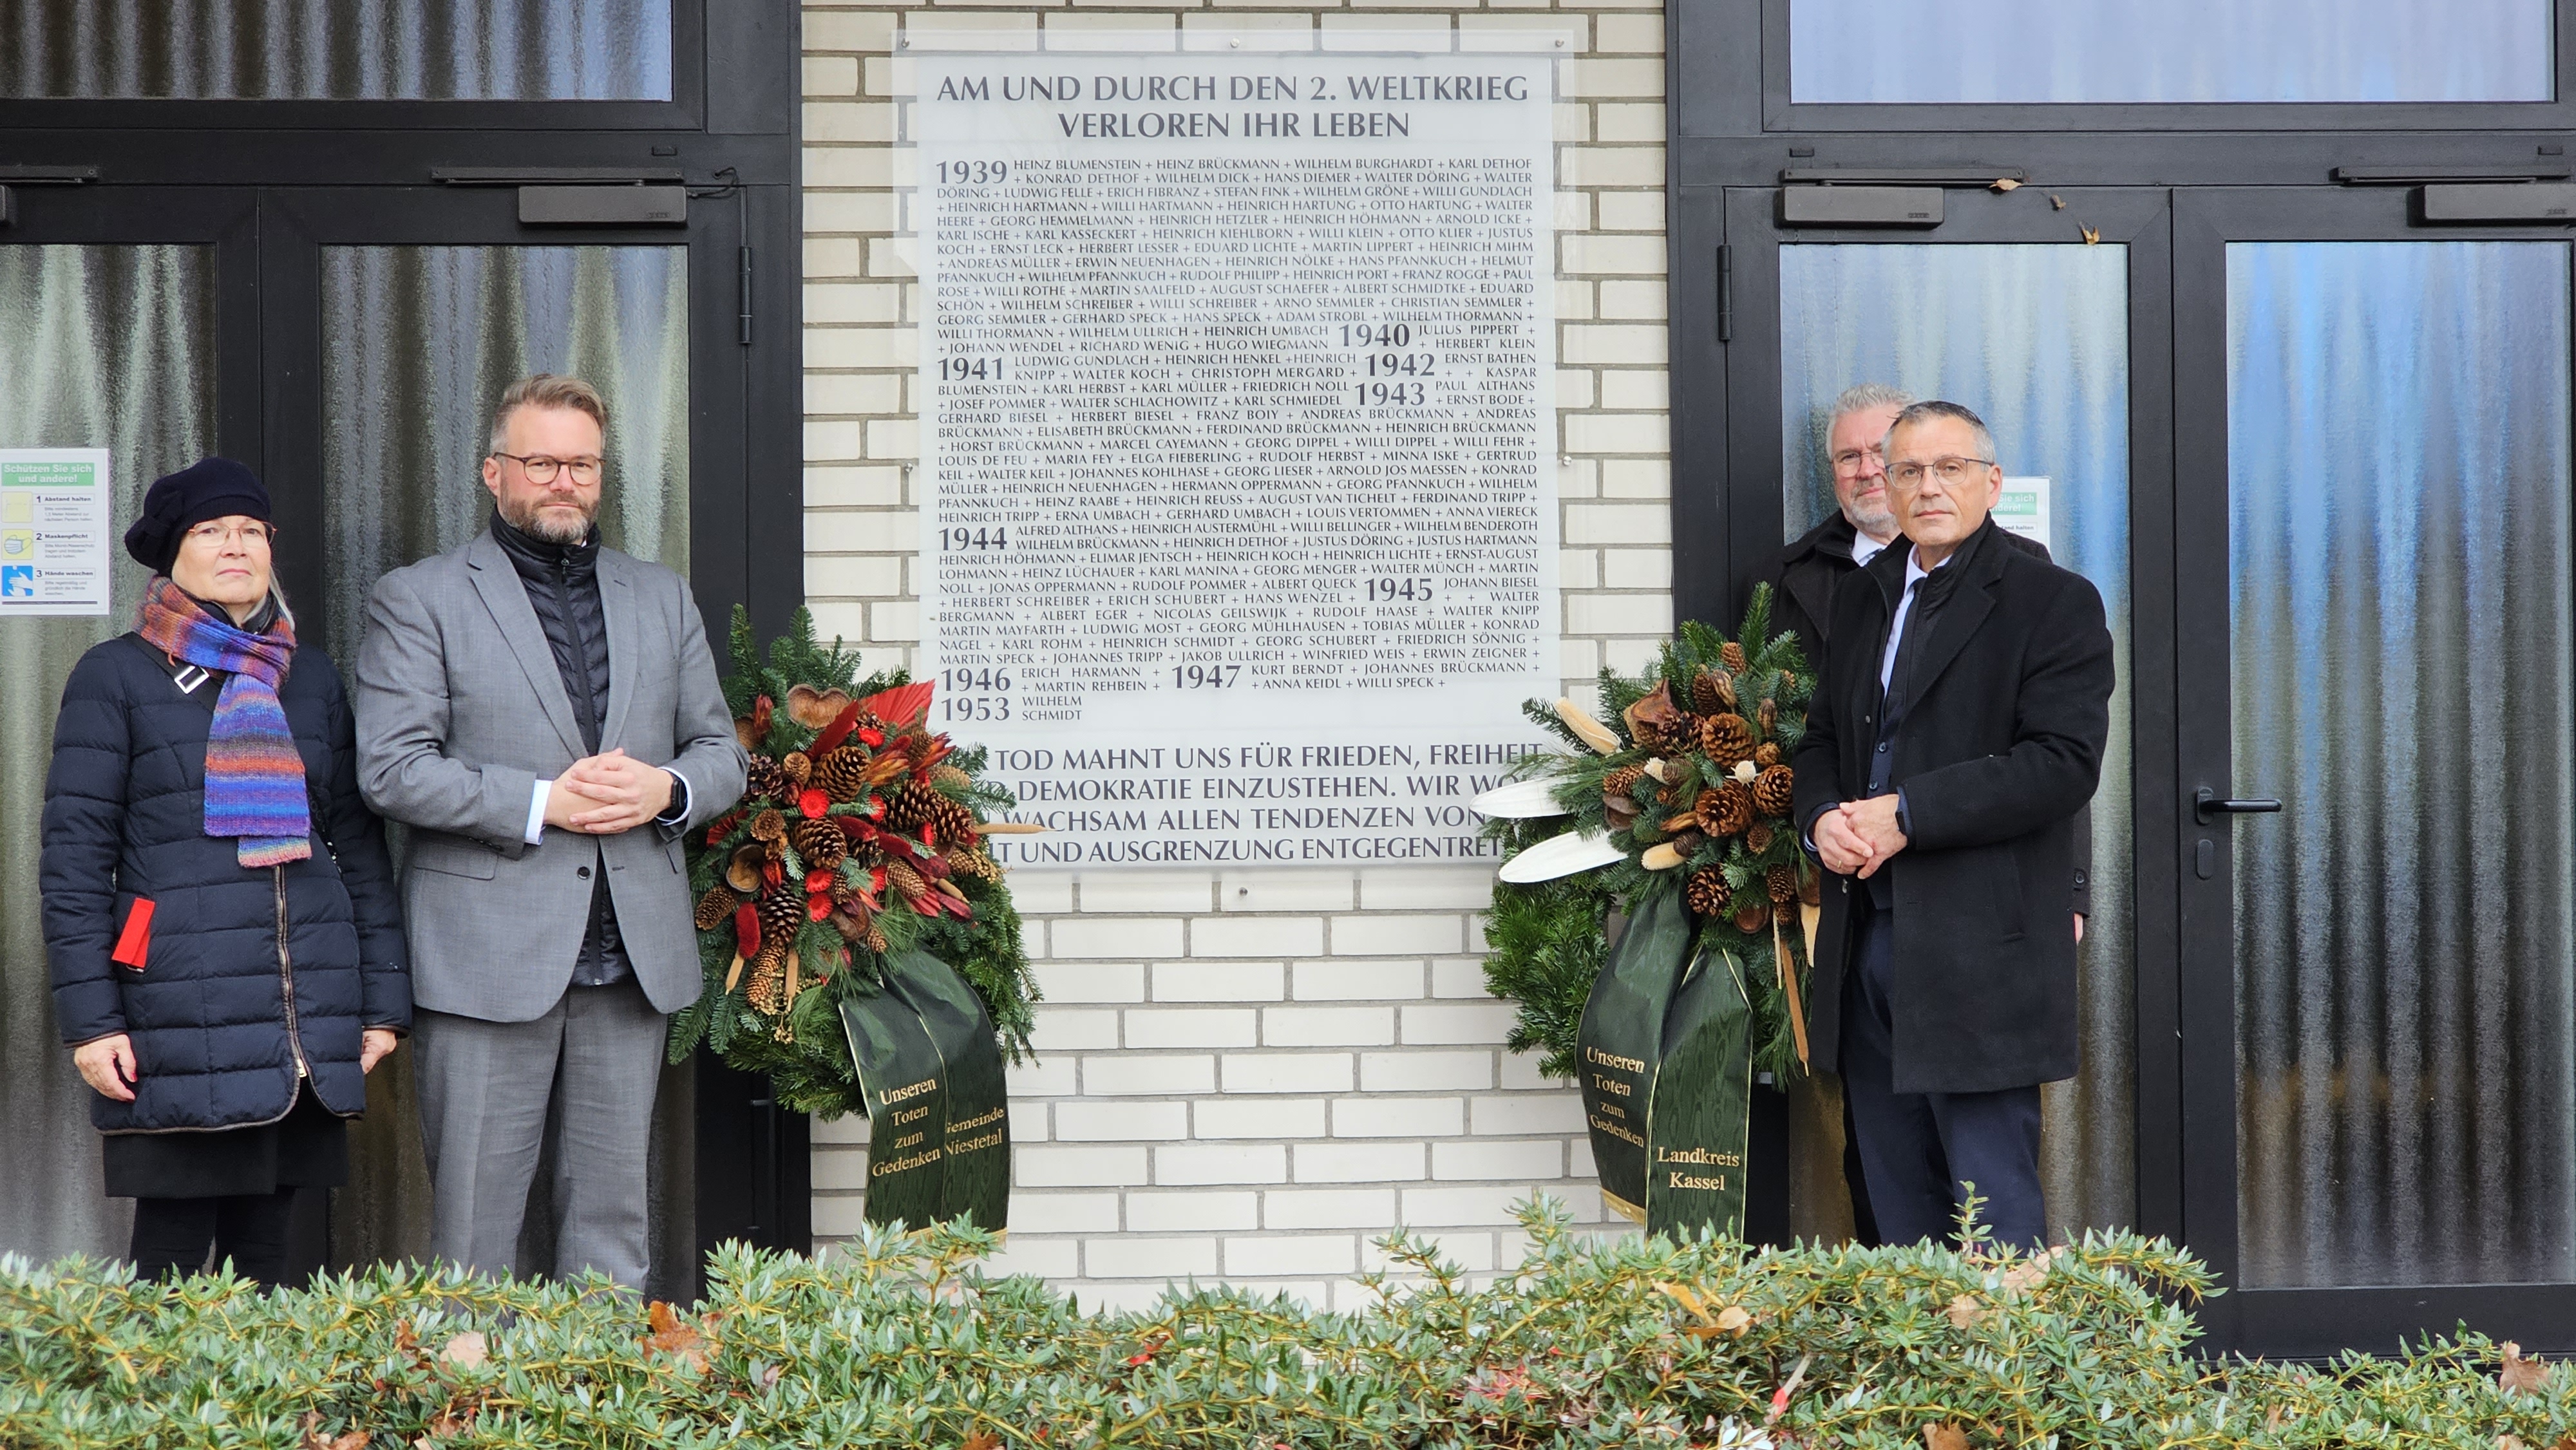 Bürgermeister Brückmann und Frau Dodenhoeft sowie Herr Siebert und Herr Hammermüller gedenken den Toten in Heiligenrode.